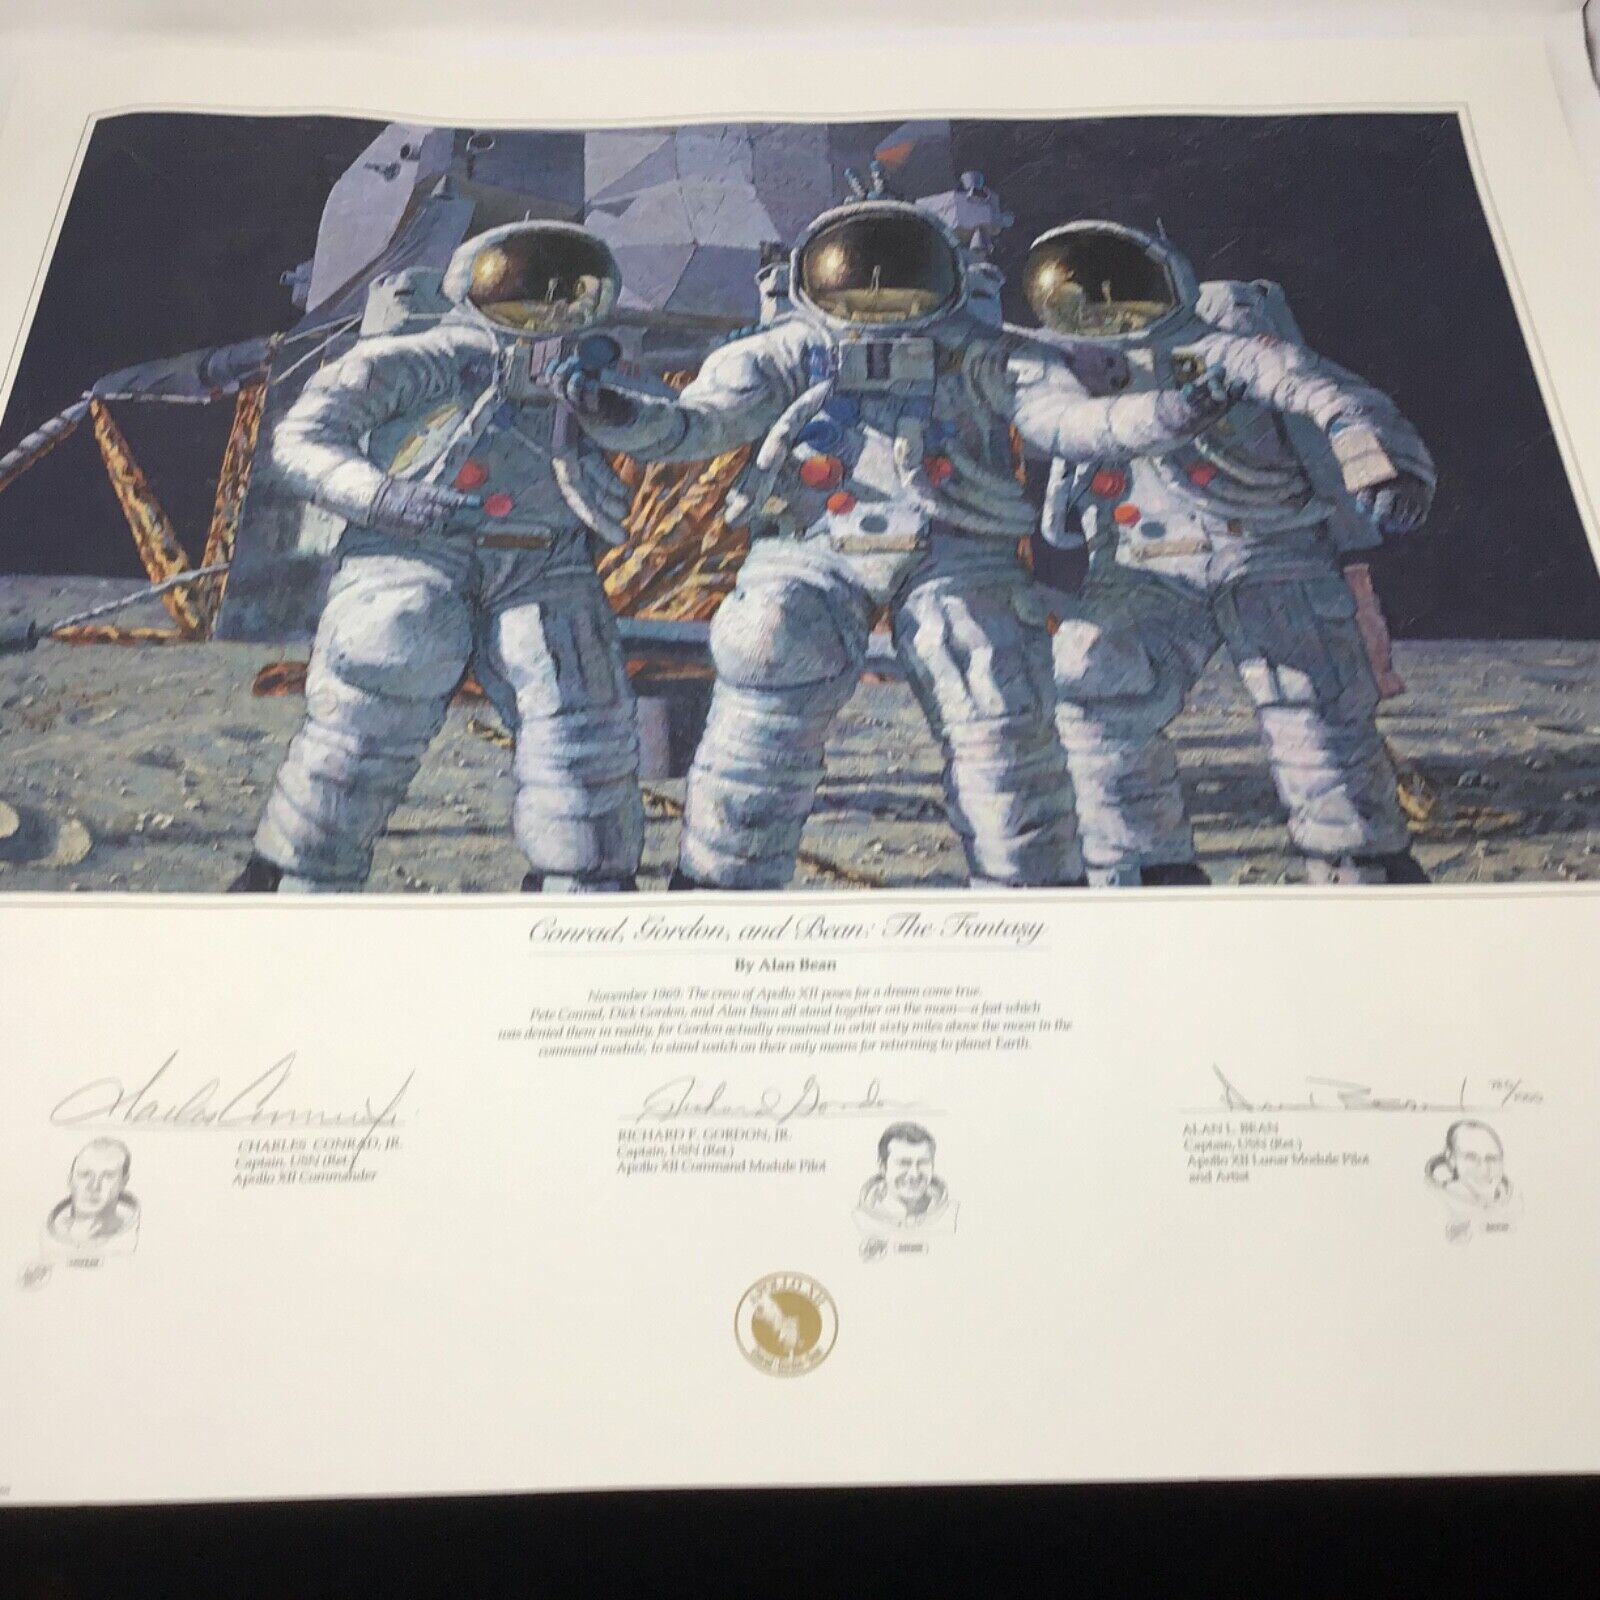 Vintage NASA Apollo XII Conrad, Gordon and Bean: The Fantasy Signed 1993